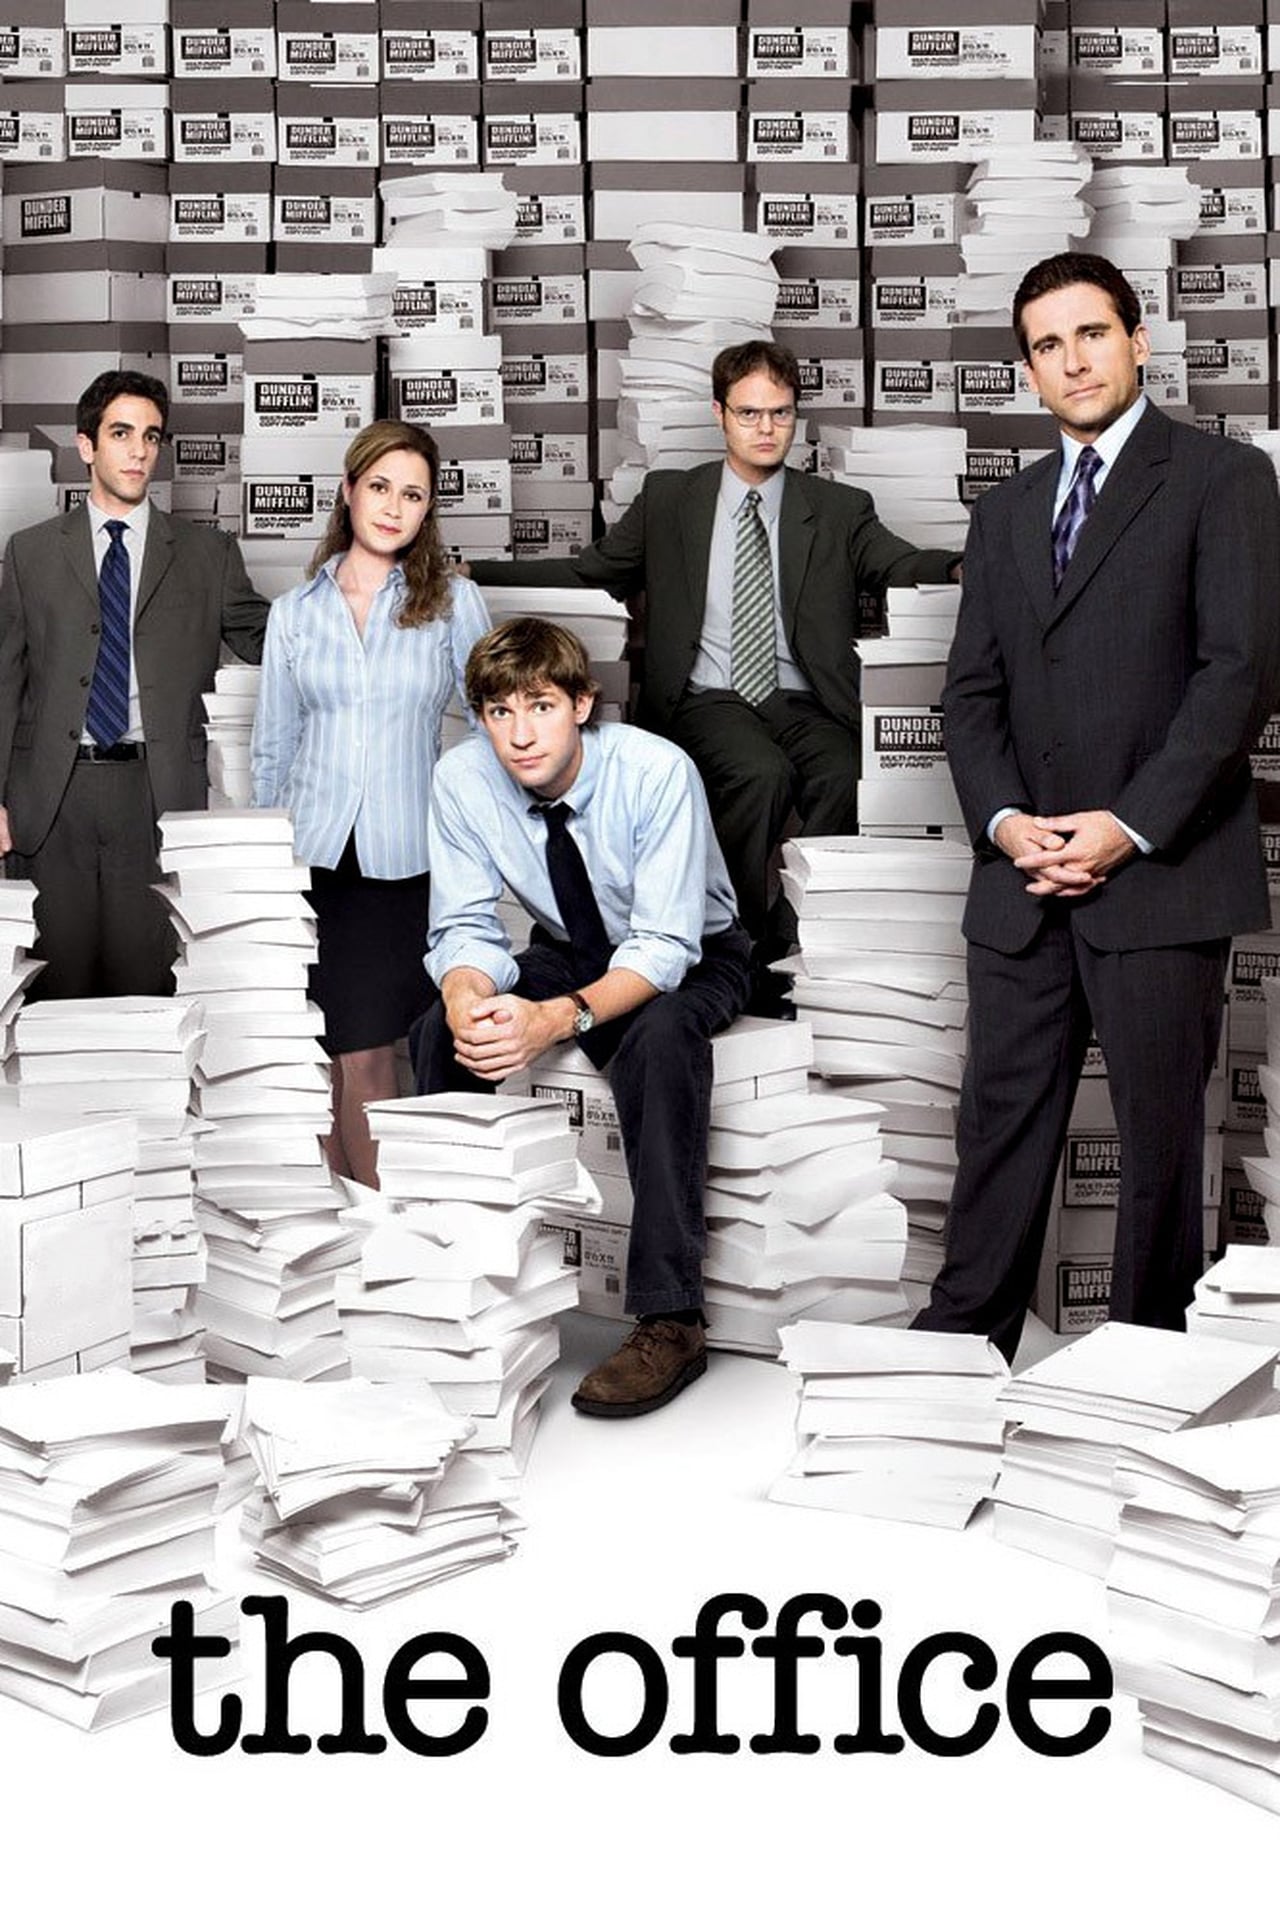 The Office (US) Season 8